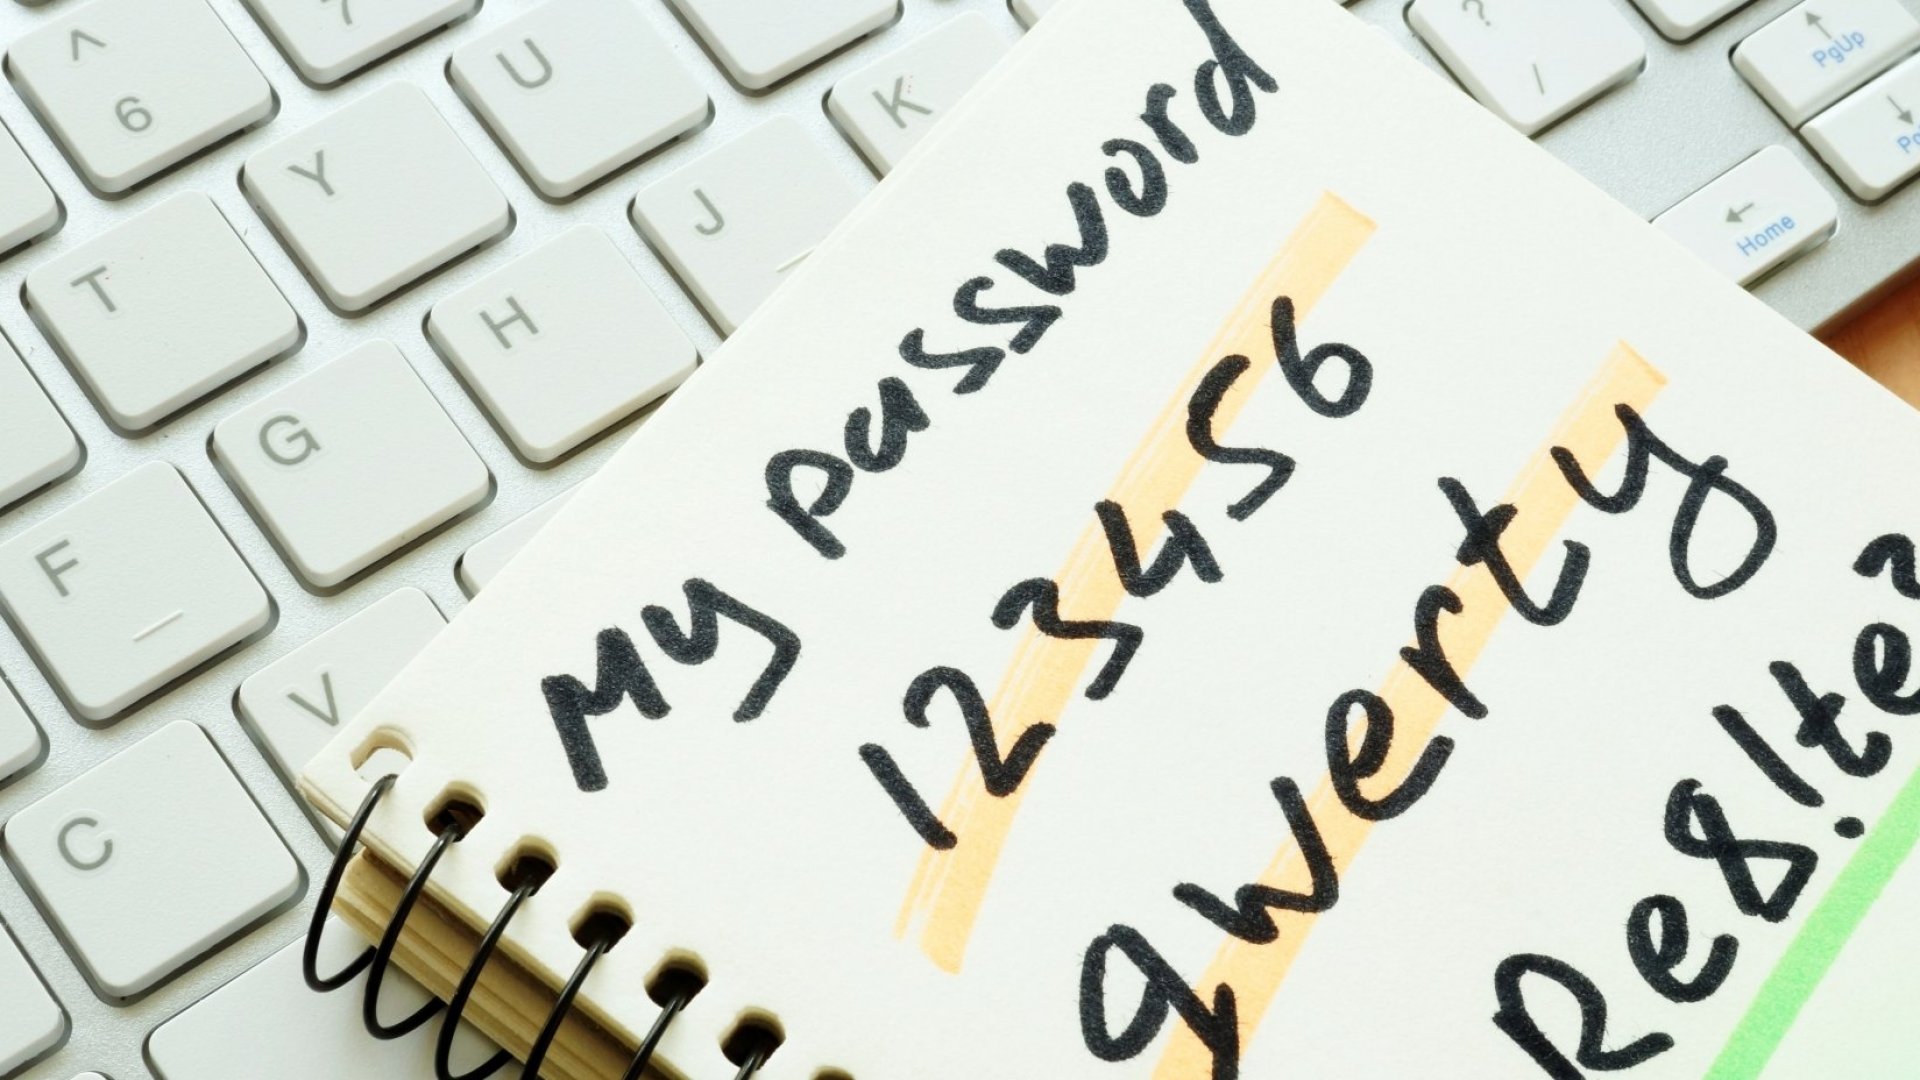 123456 worst password 2020